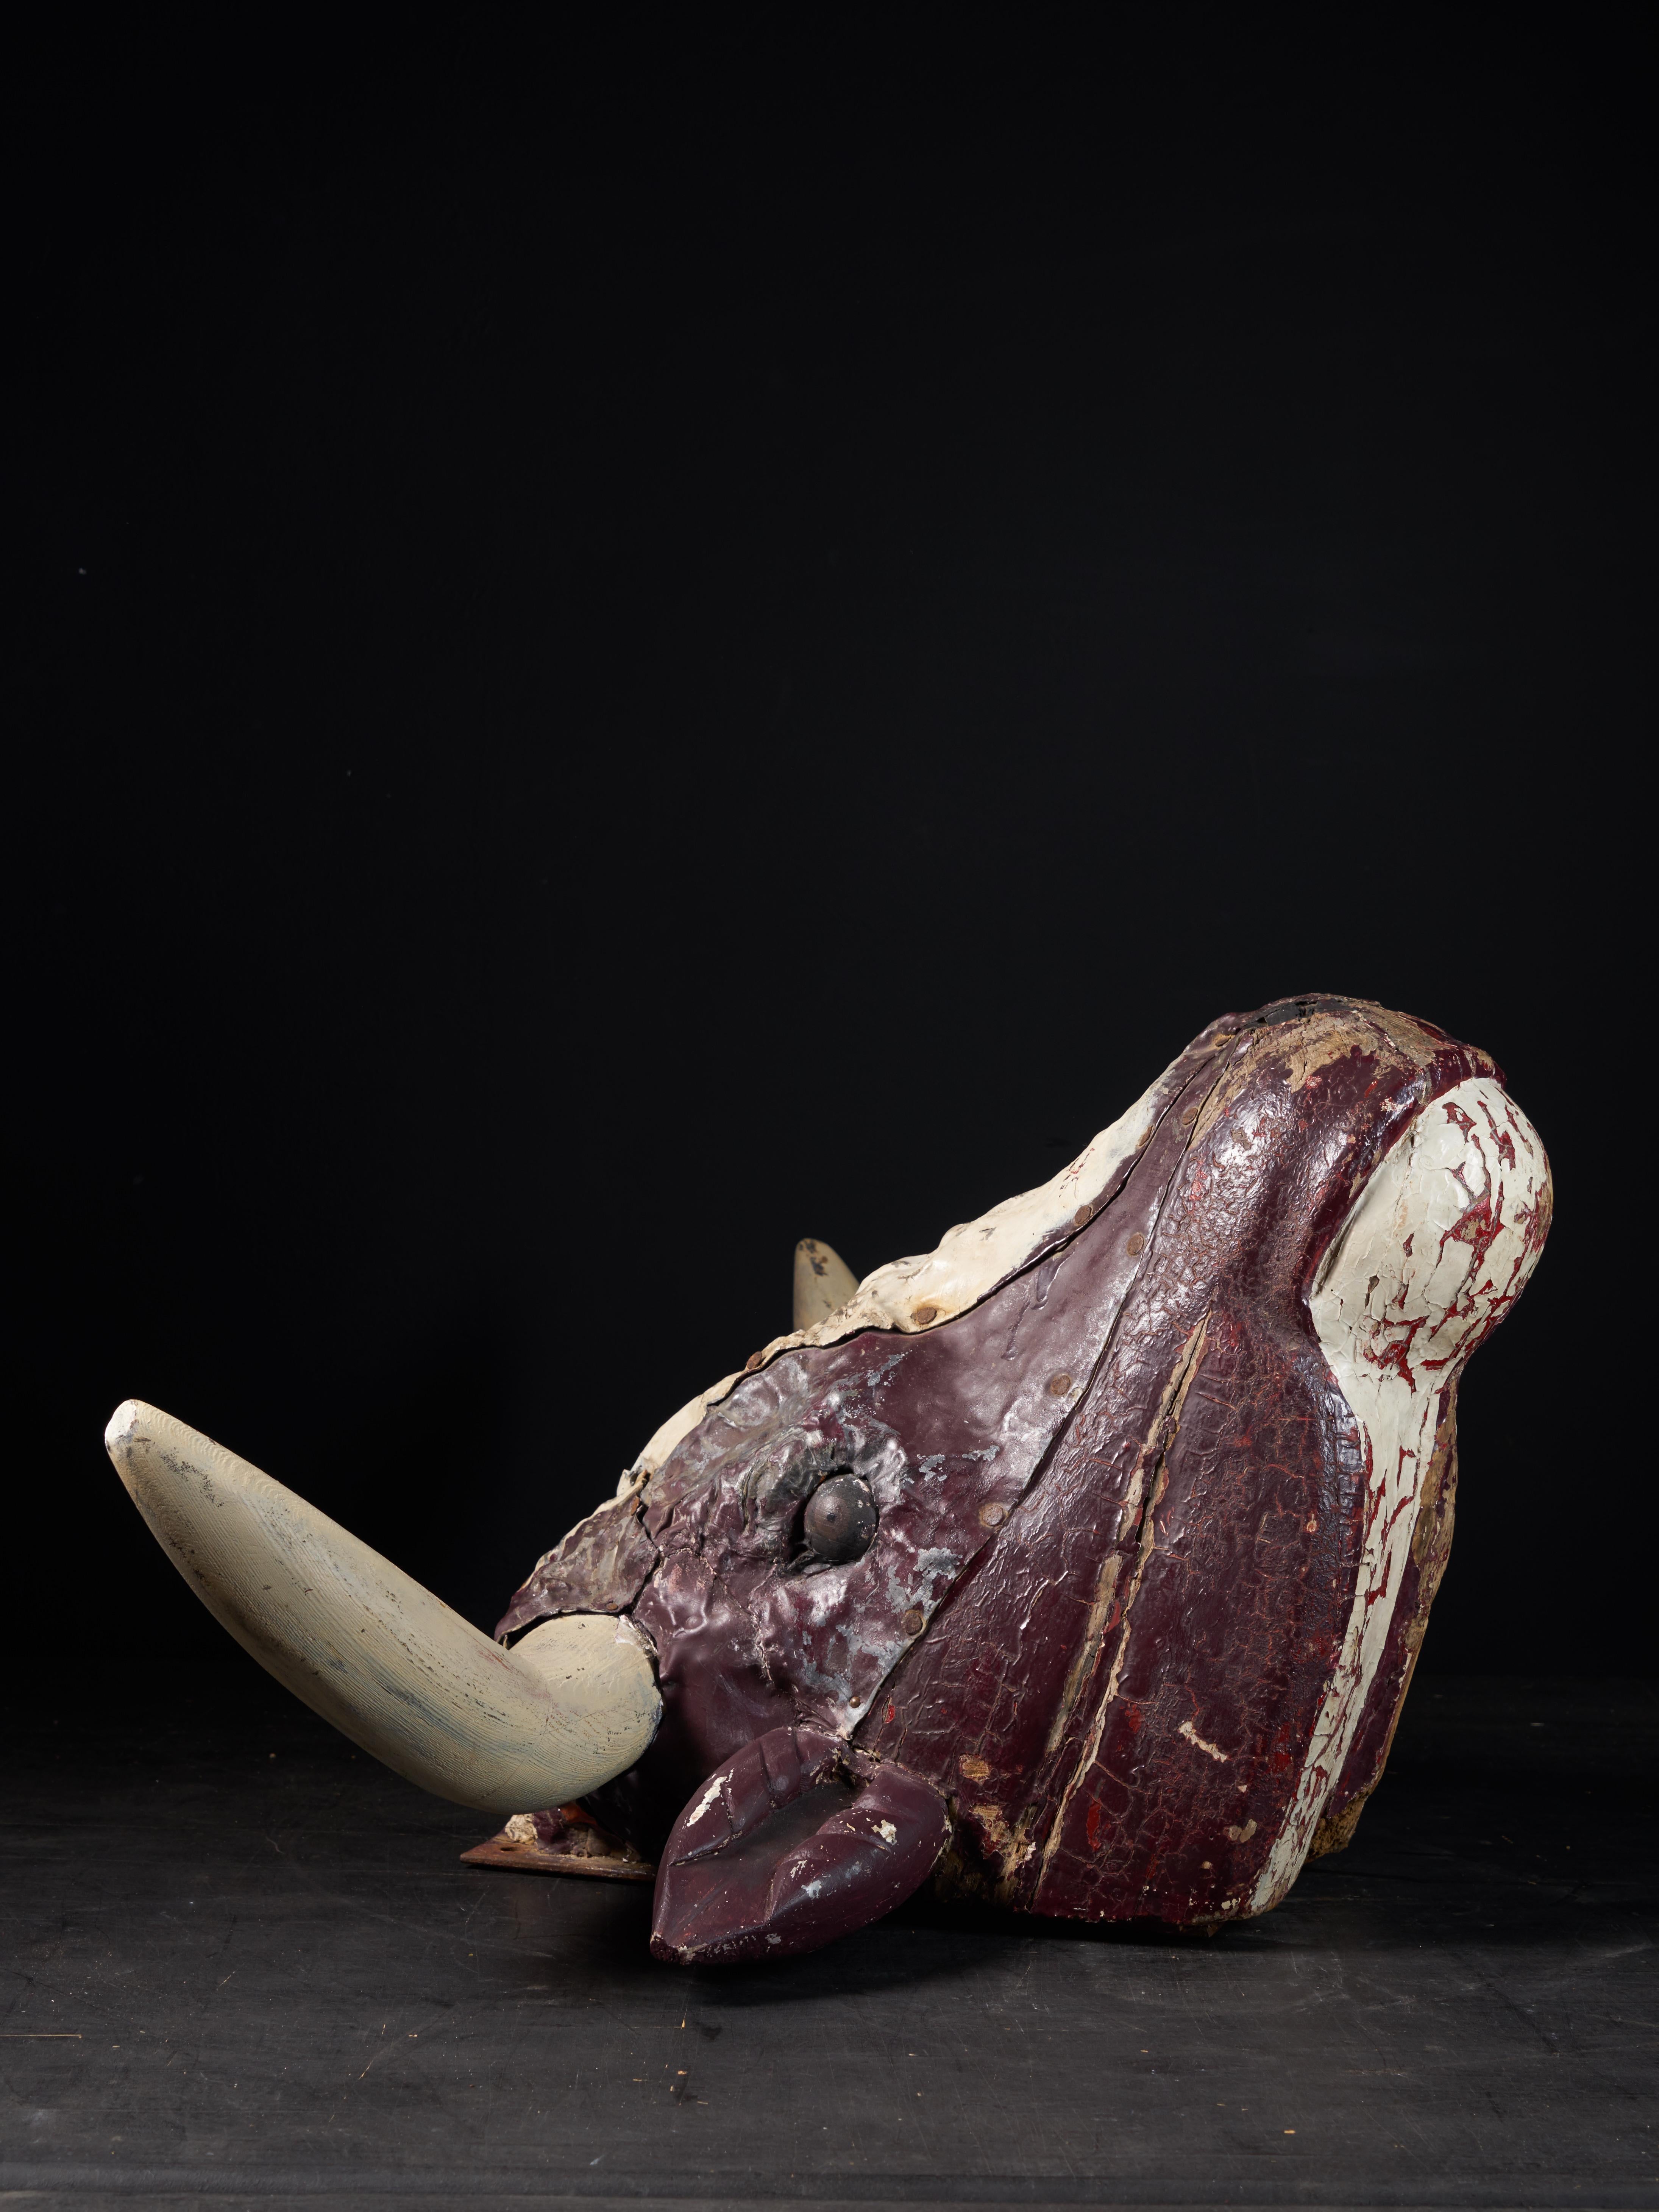 Ancienne tête de bœuf en bois français, utilisée comme enseigne extérieure d'une boucherie. Les cornes, le dessous du menton et le milieu de la tête sont peints en blanc ivoire et le reste de la tête du taureau est recouvert d'une couleur